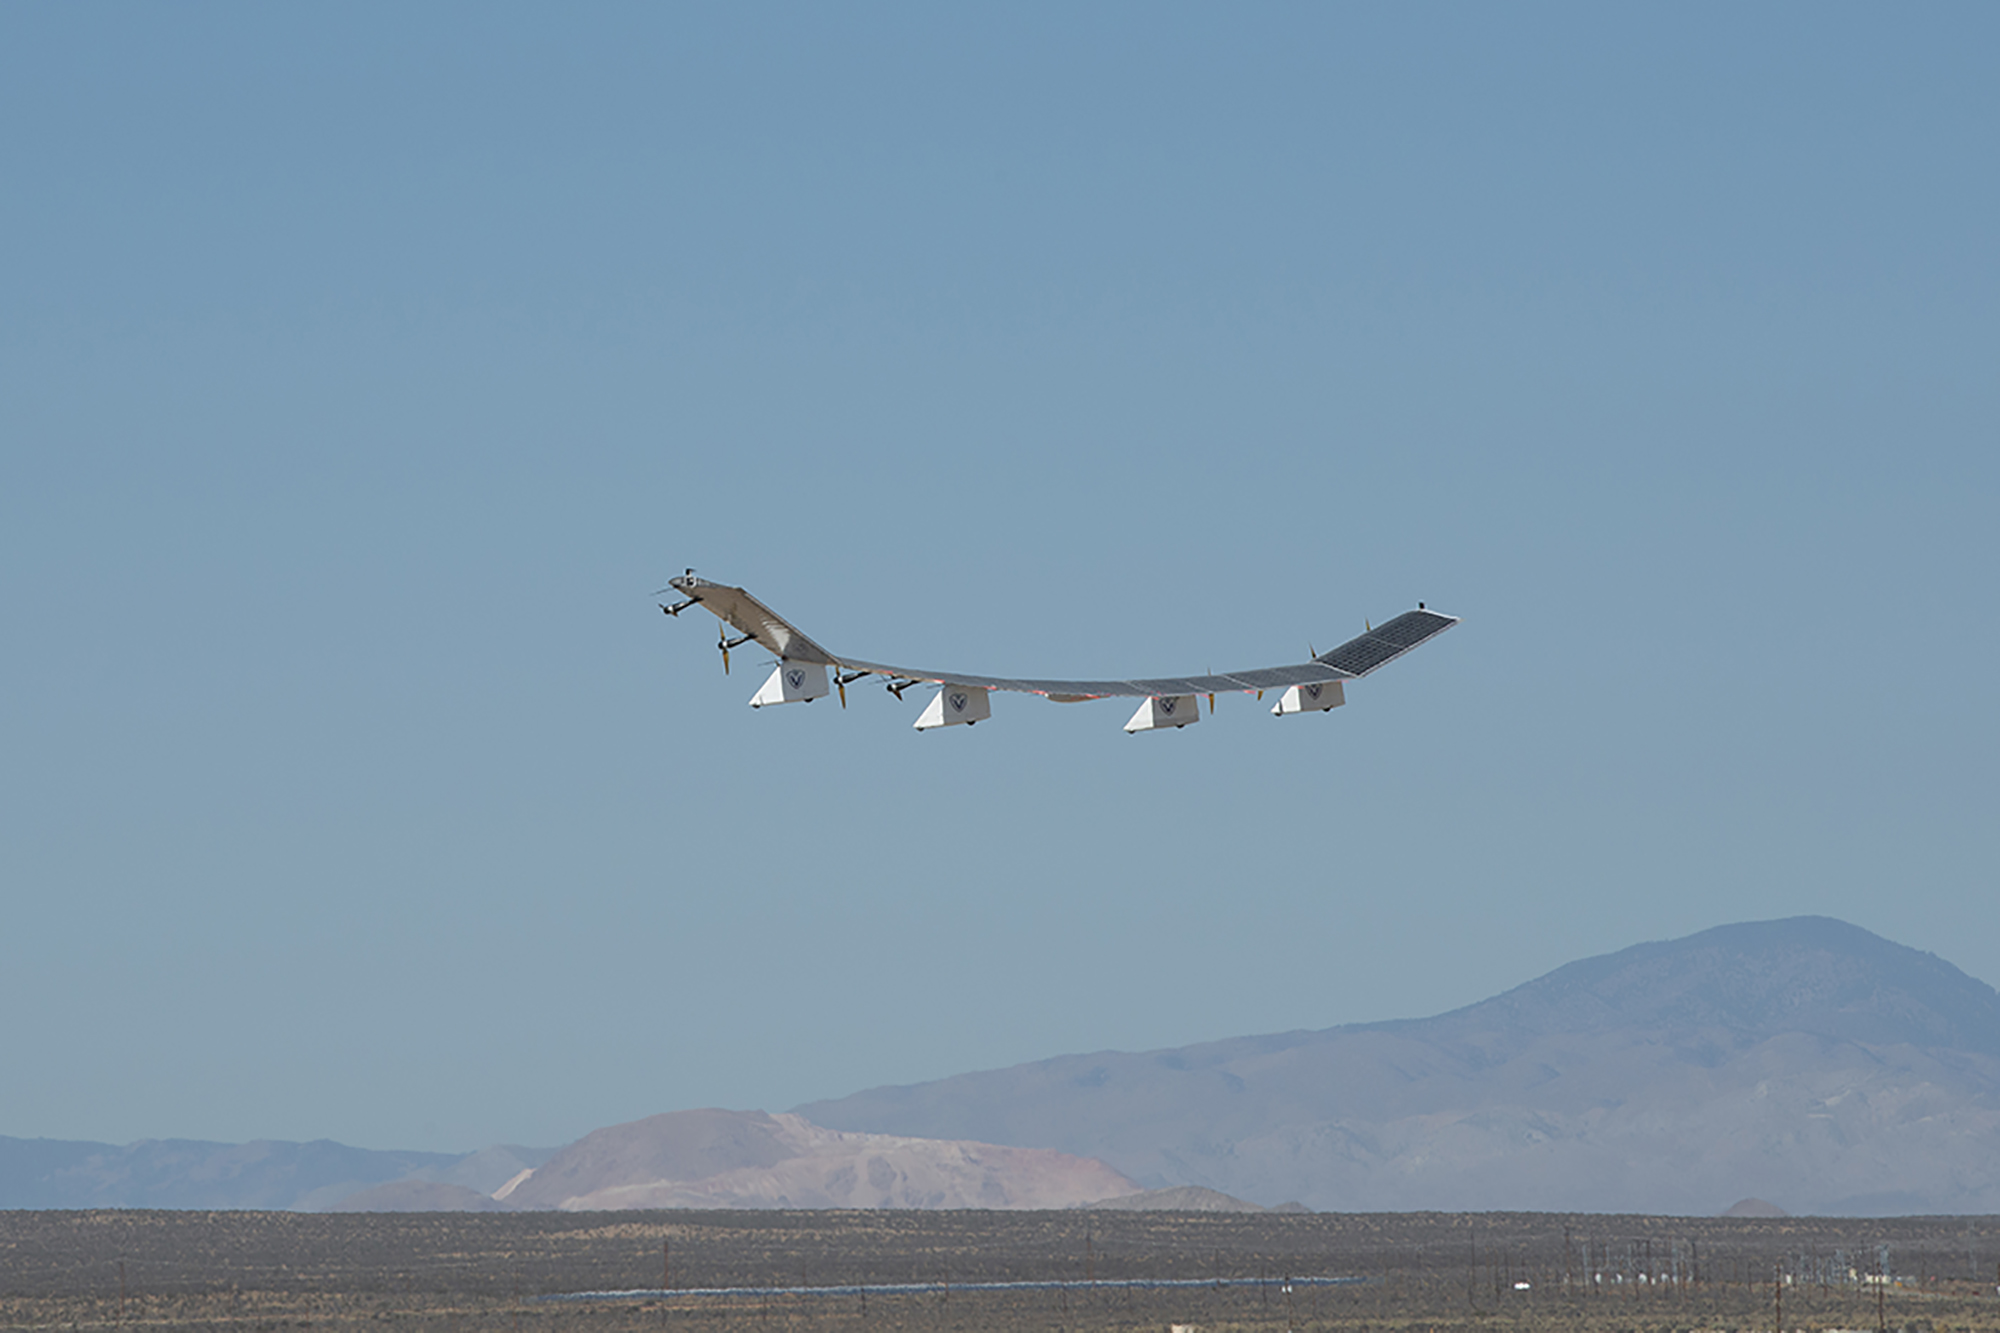 Sunglider flies from NASA's Armstrong Flight Research Center